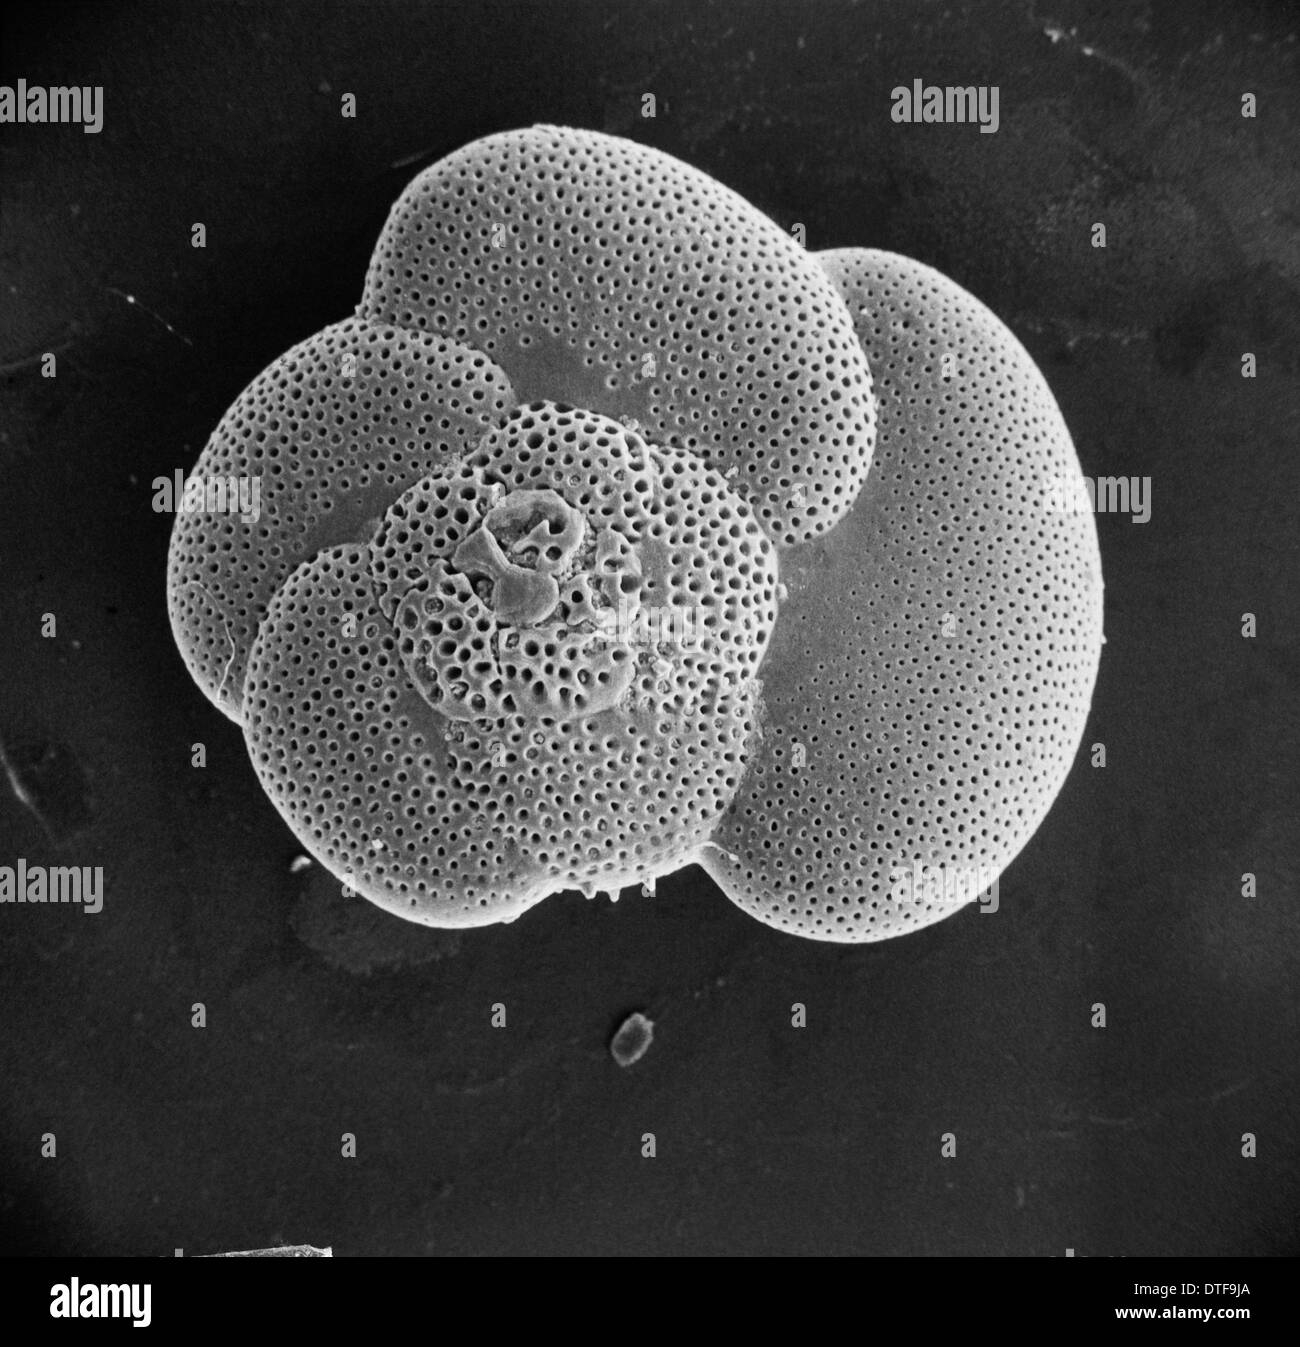 Globorotalia scitula, foraminifera fossil Stock Photo